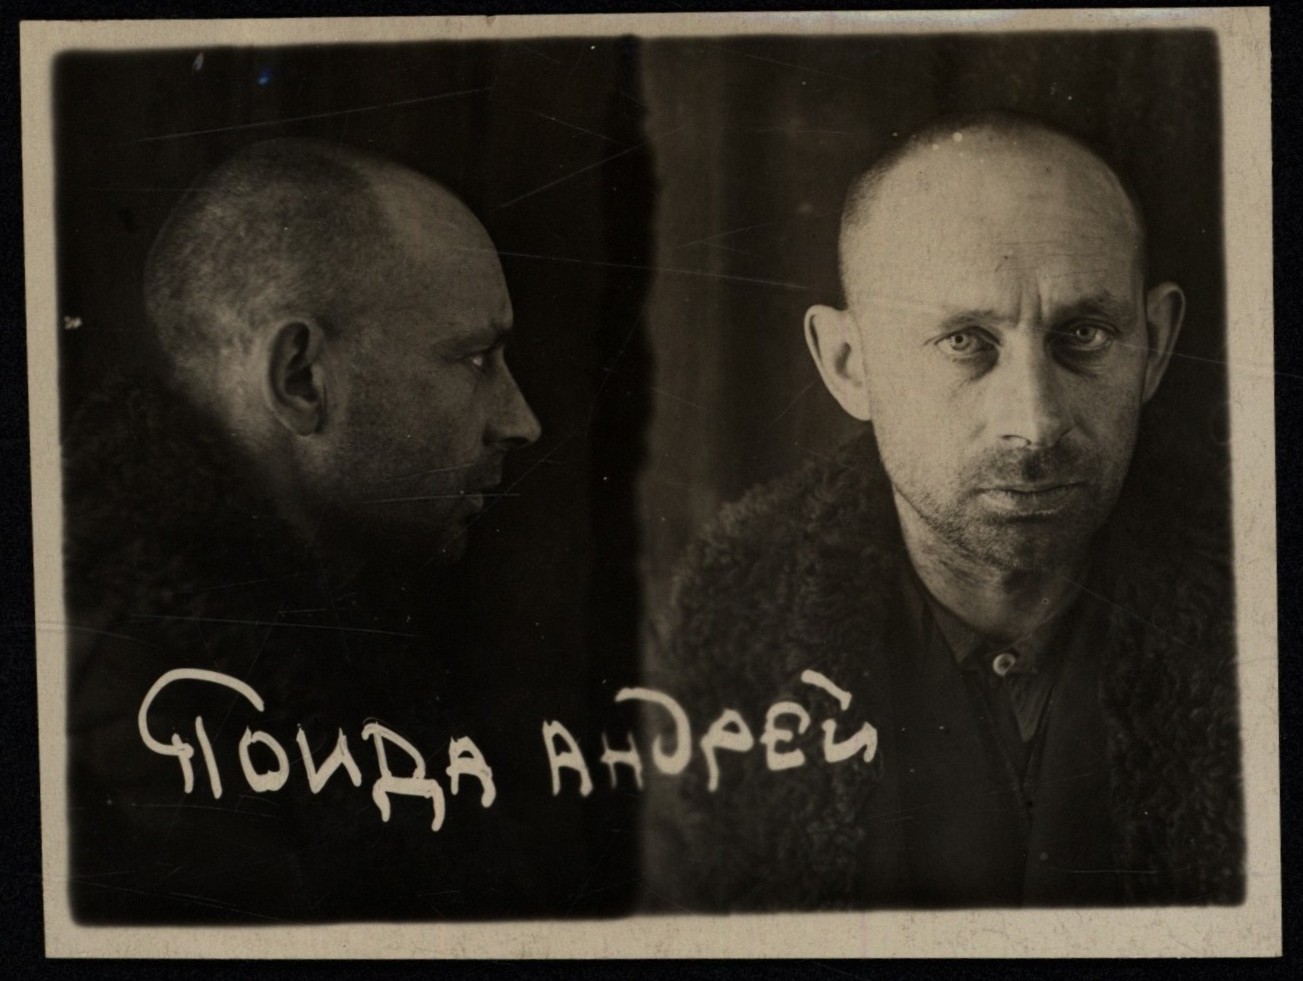 Andrej Pojda (1916-1943)